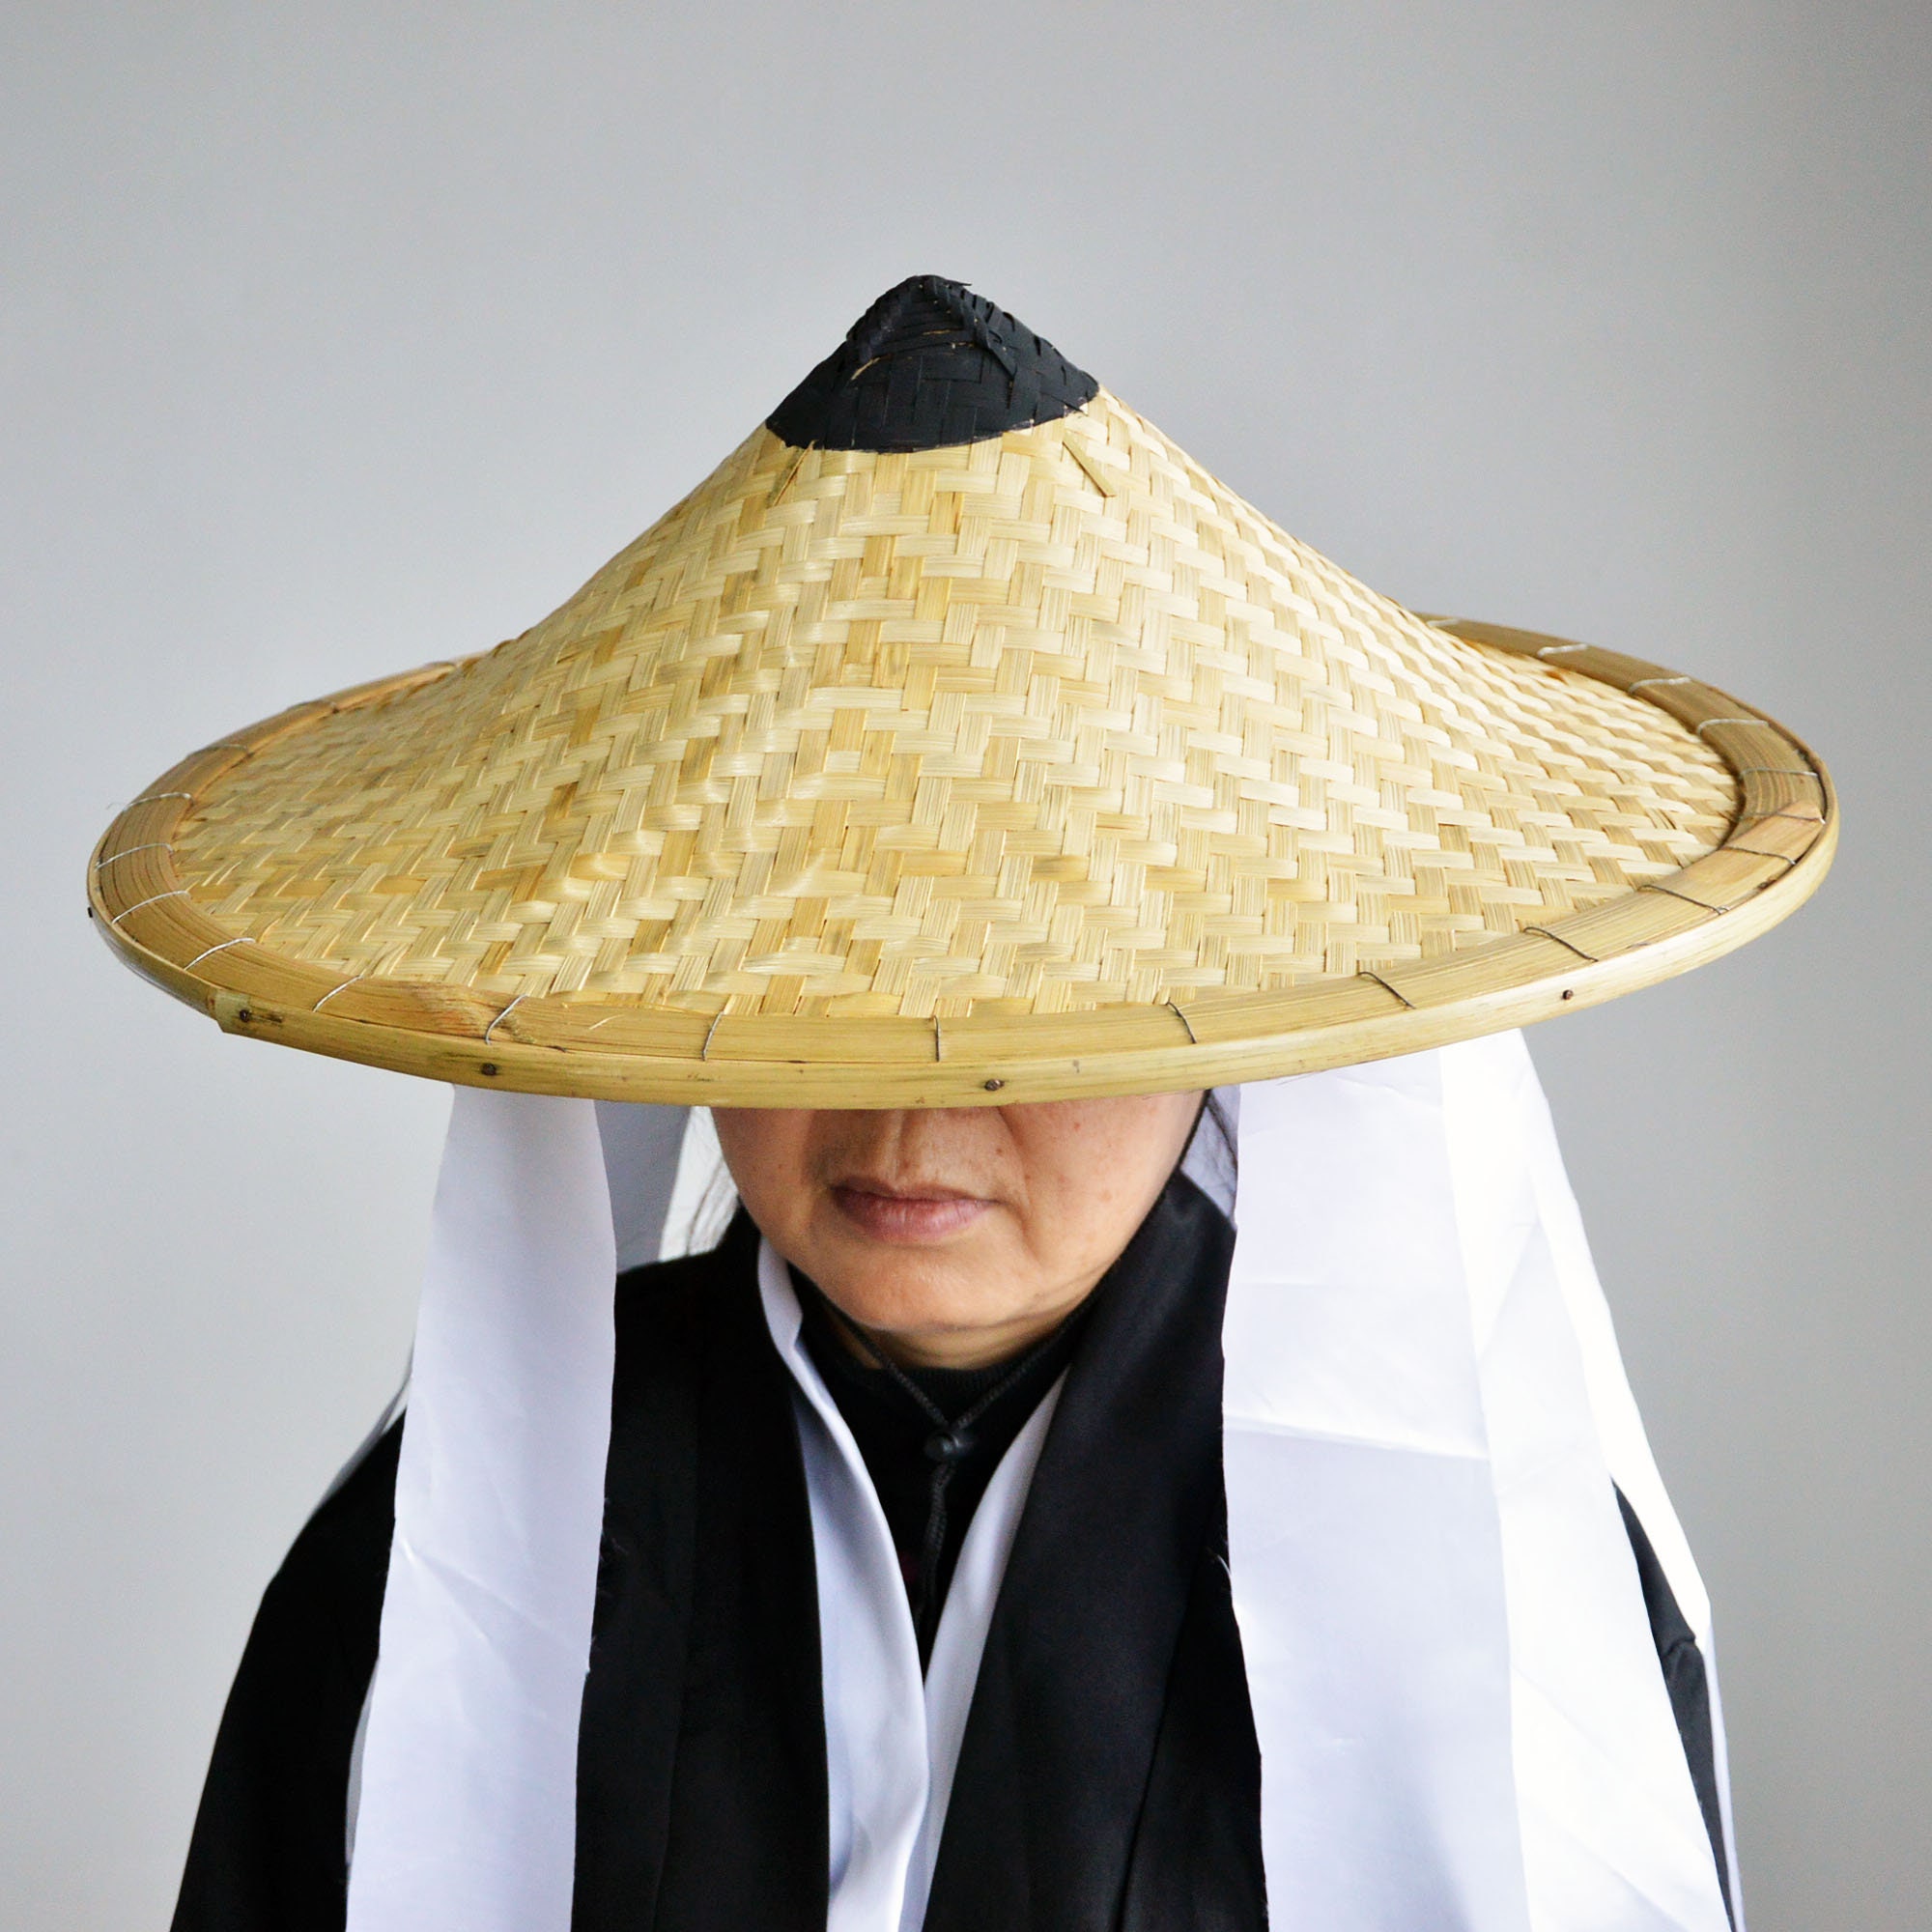 Bamboo hat. Японская соломенная шляпа амигаса. Японская шляпа амигаса Самурай. Шляпа амигаса бамбуковая. Каса японская шляпа.